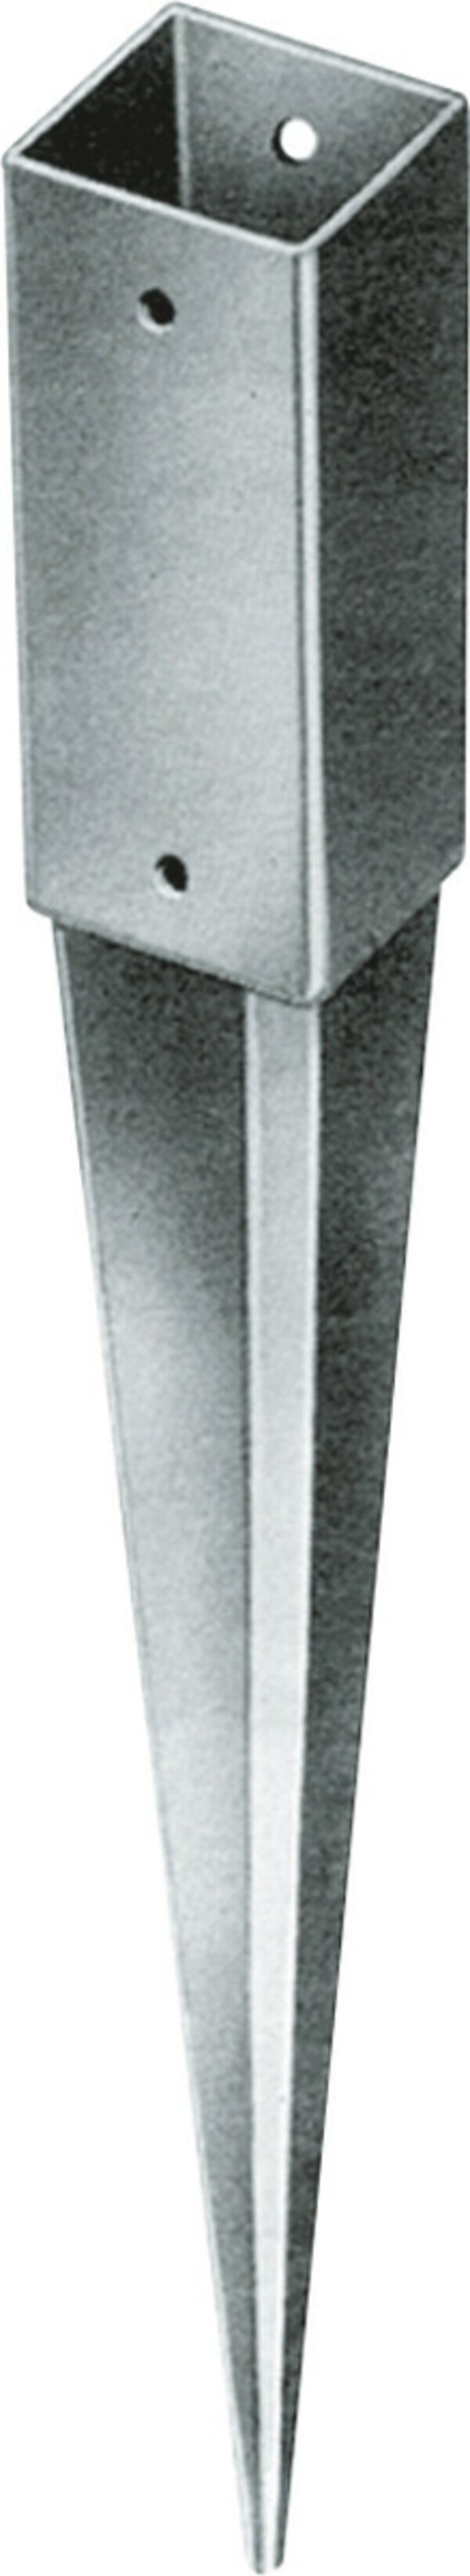 Bild 1 von TrendLine Einschlagbodenhülse 90 x 7,1 x 7,1 cm
, 
korrosionsbeständig